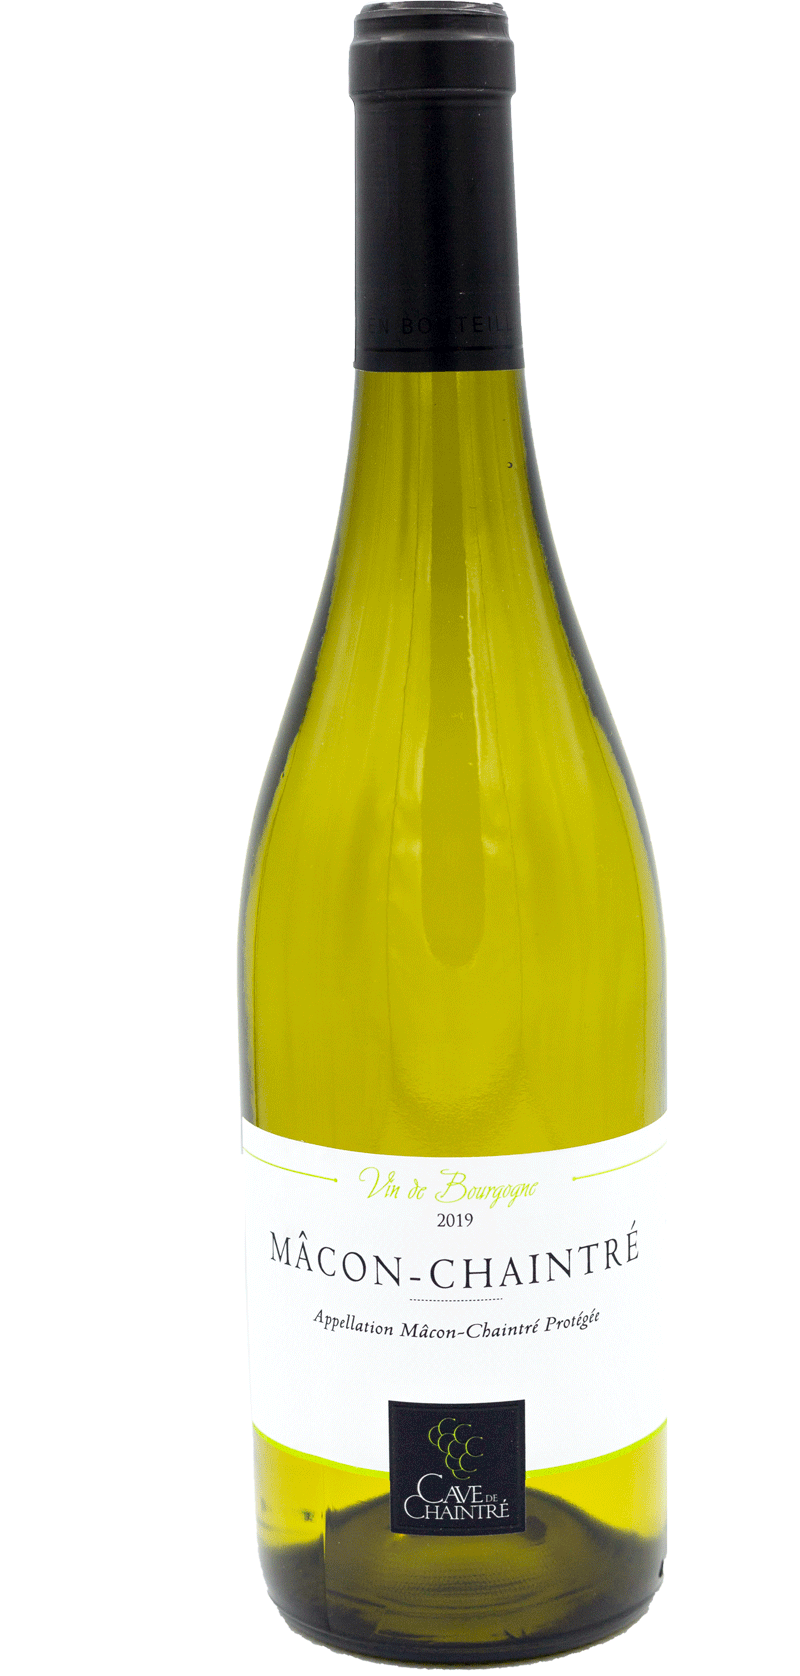 Mâcon Chaintré 2019 - Cave Chaintré - Witte wijn